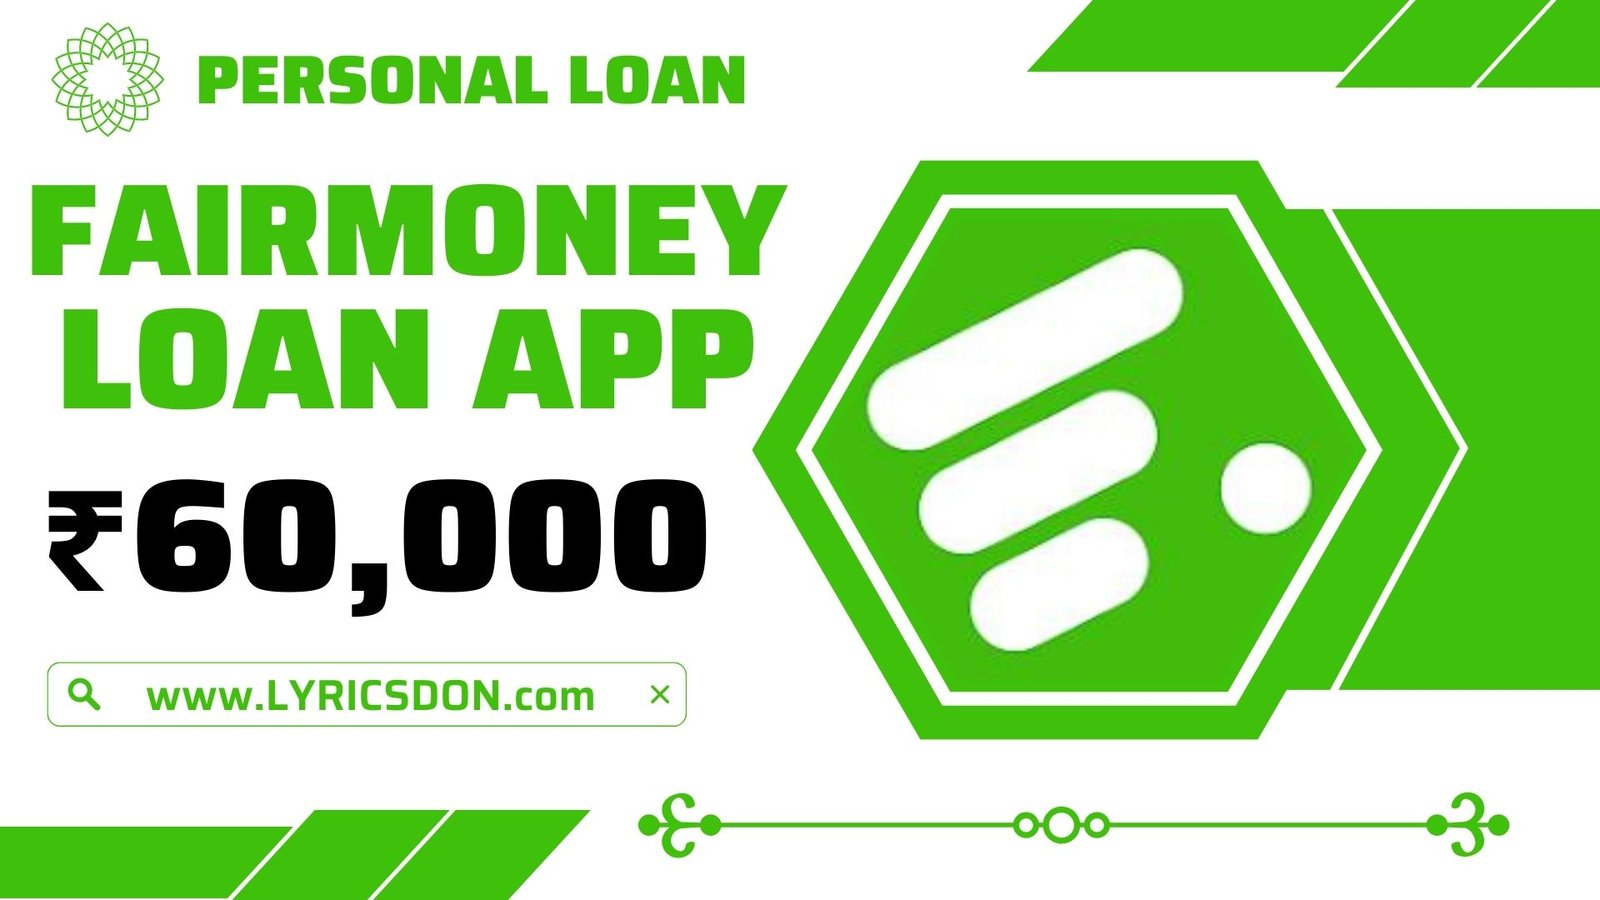 FairMoney Loan App Loan Amount